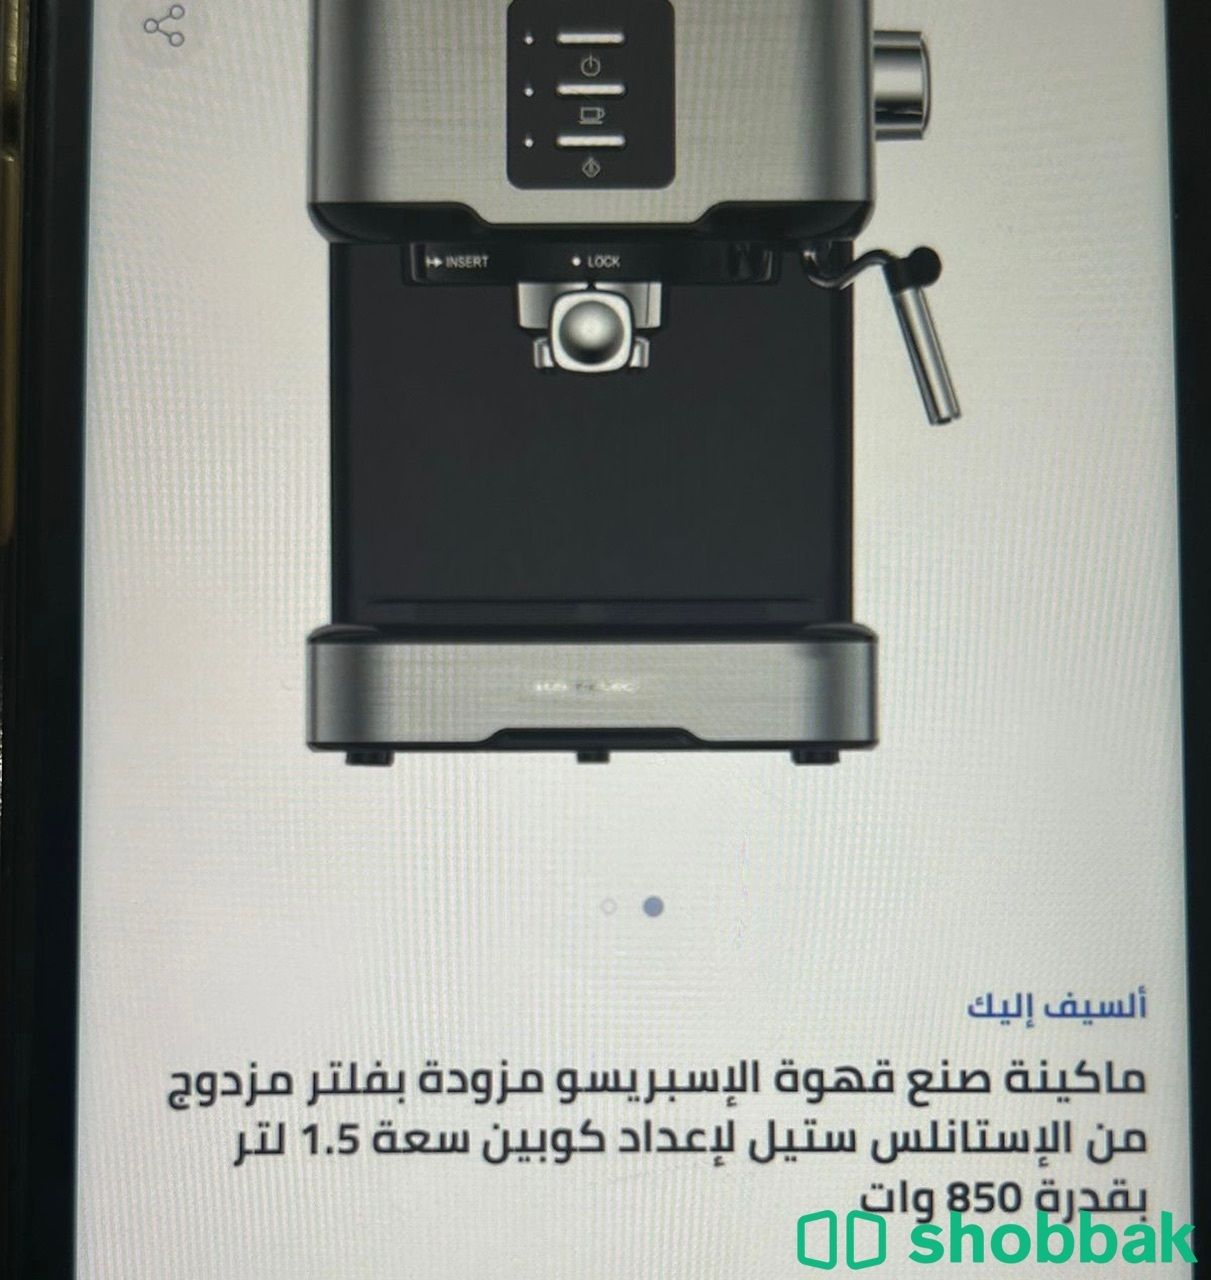 آلة قهوه  Shobbak Saudi Arabia